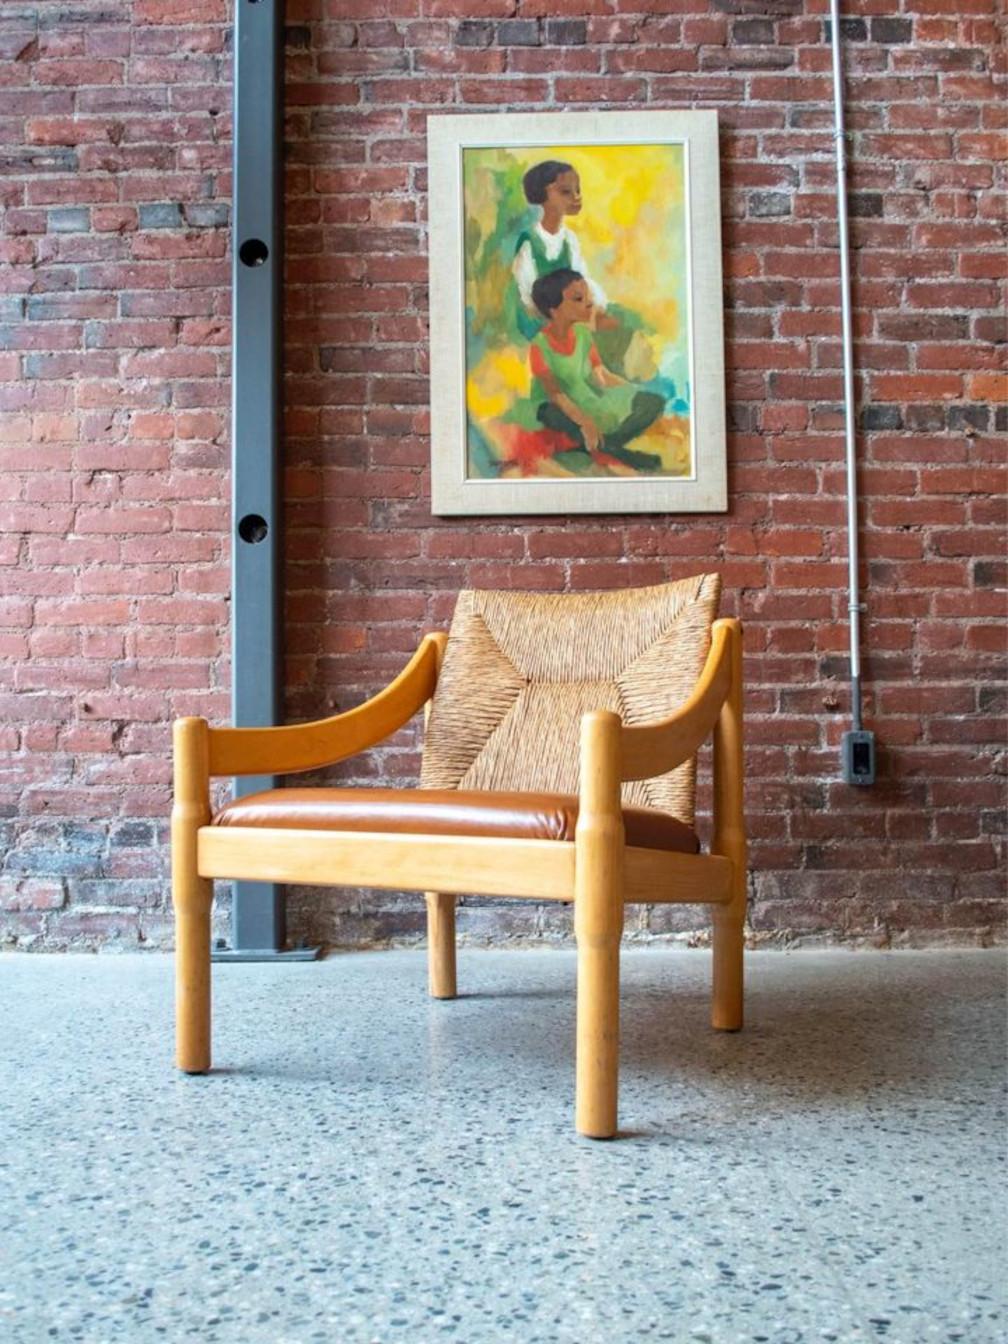 Neu in unserem Ausstellungsraum ist ein unverwechselbarer Loungesessel, entworfen von Vico Magistretti. Dieses einzigartige Möbelstück zeichnet sich durch ein robustes Buchengestell, eine kunstvoll gearbeitete Rattanrückenlehne und einen makellosen